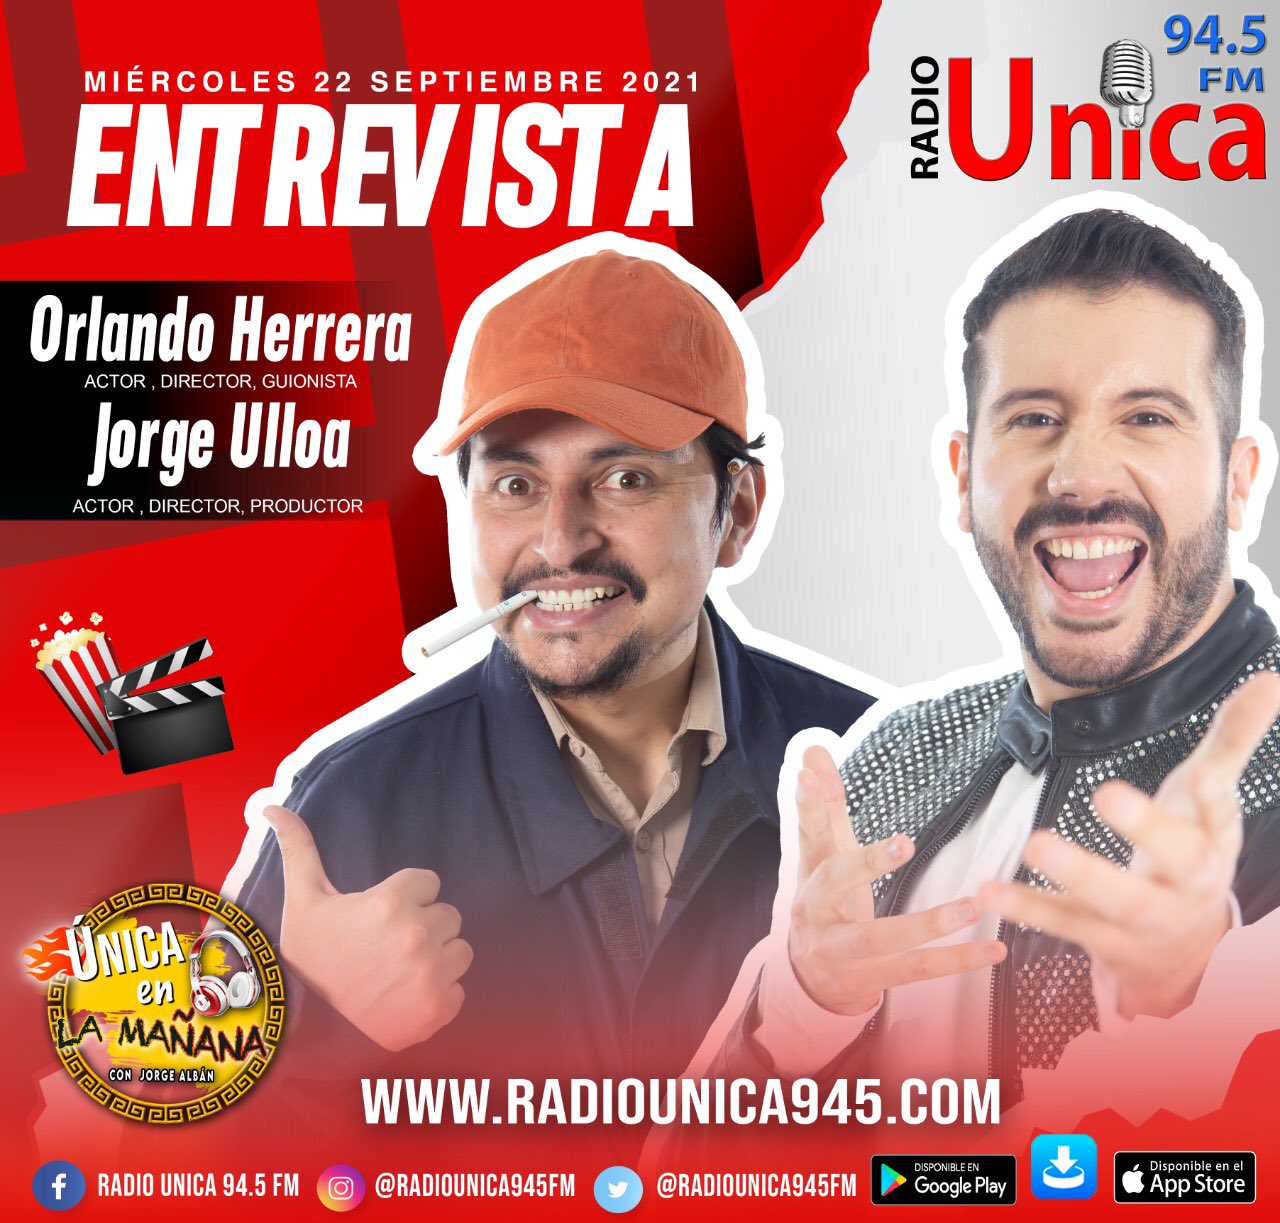 Unica 94.5 FM Twitter: "MAÑANA💥| Tendremos entrevista llena de #humor y #originalidad junto a los chicos de @enchufetv, @OrlandoH87 y @Jorgeulloaaa 🥸 no te puedes perder esta súper entrevista!